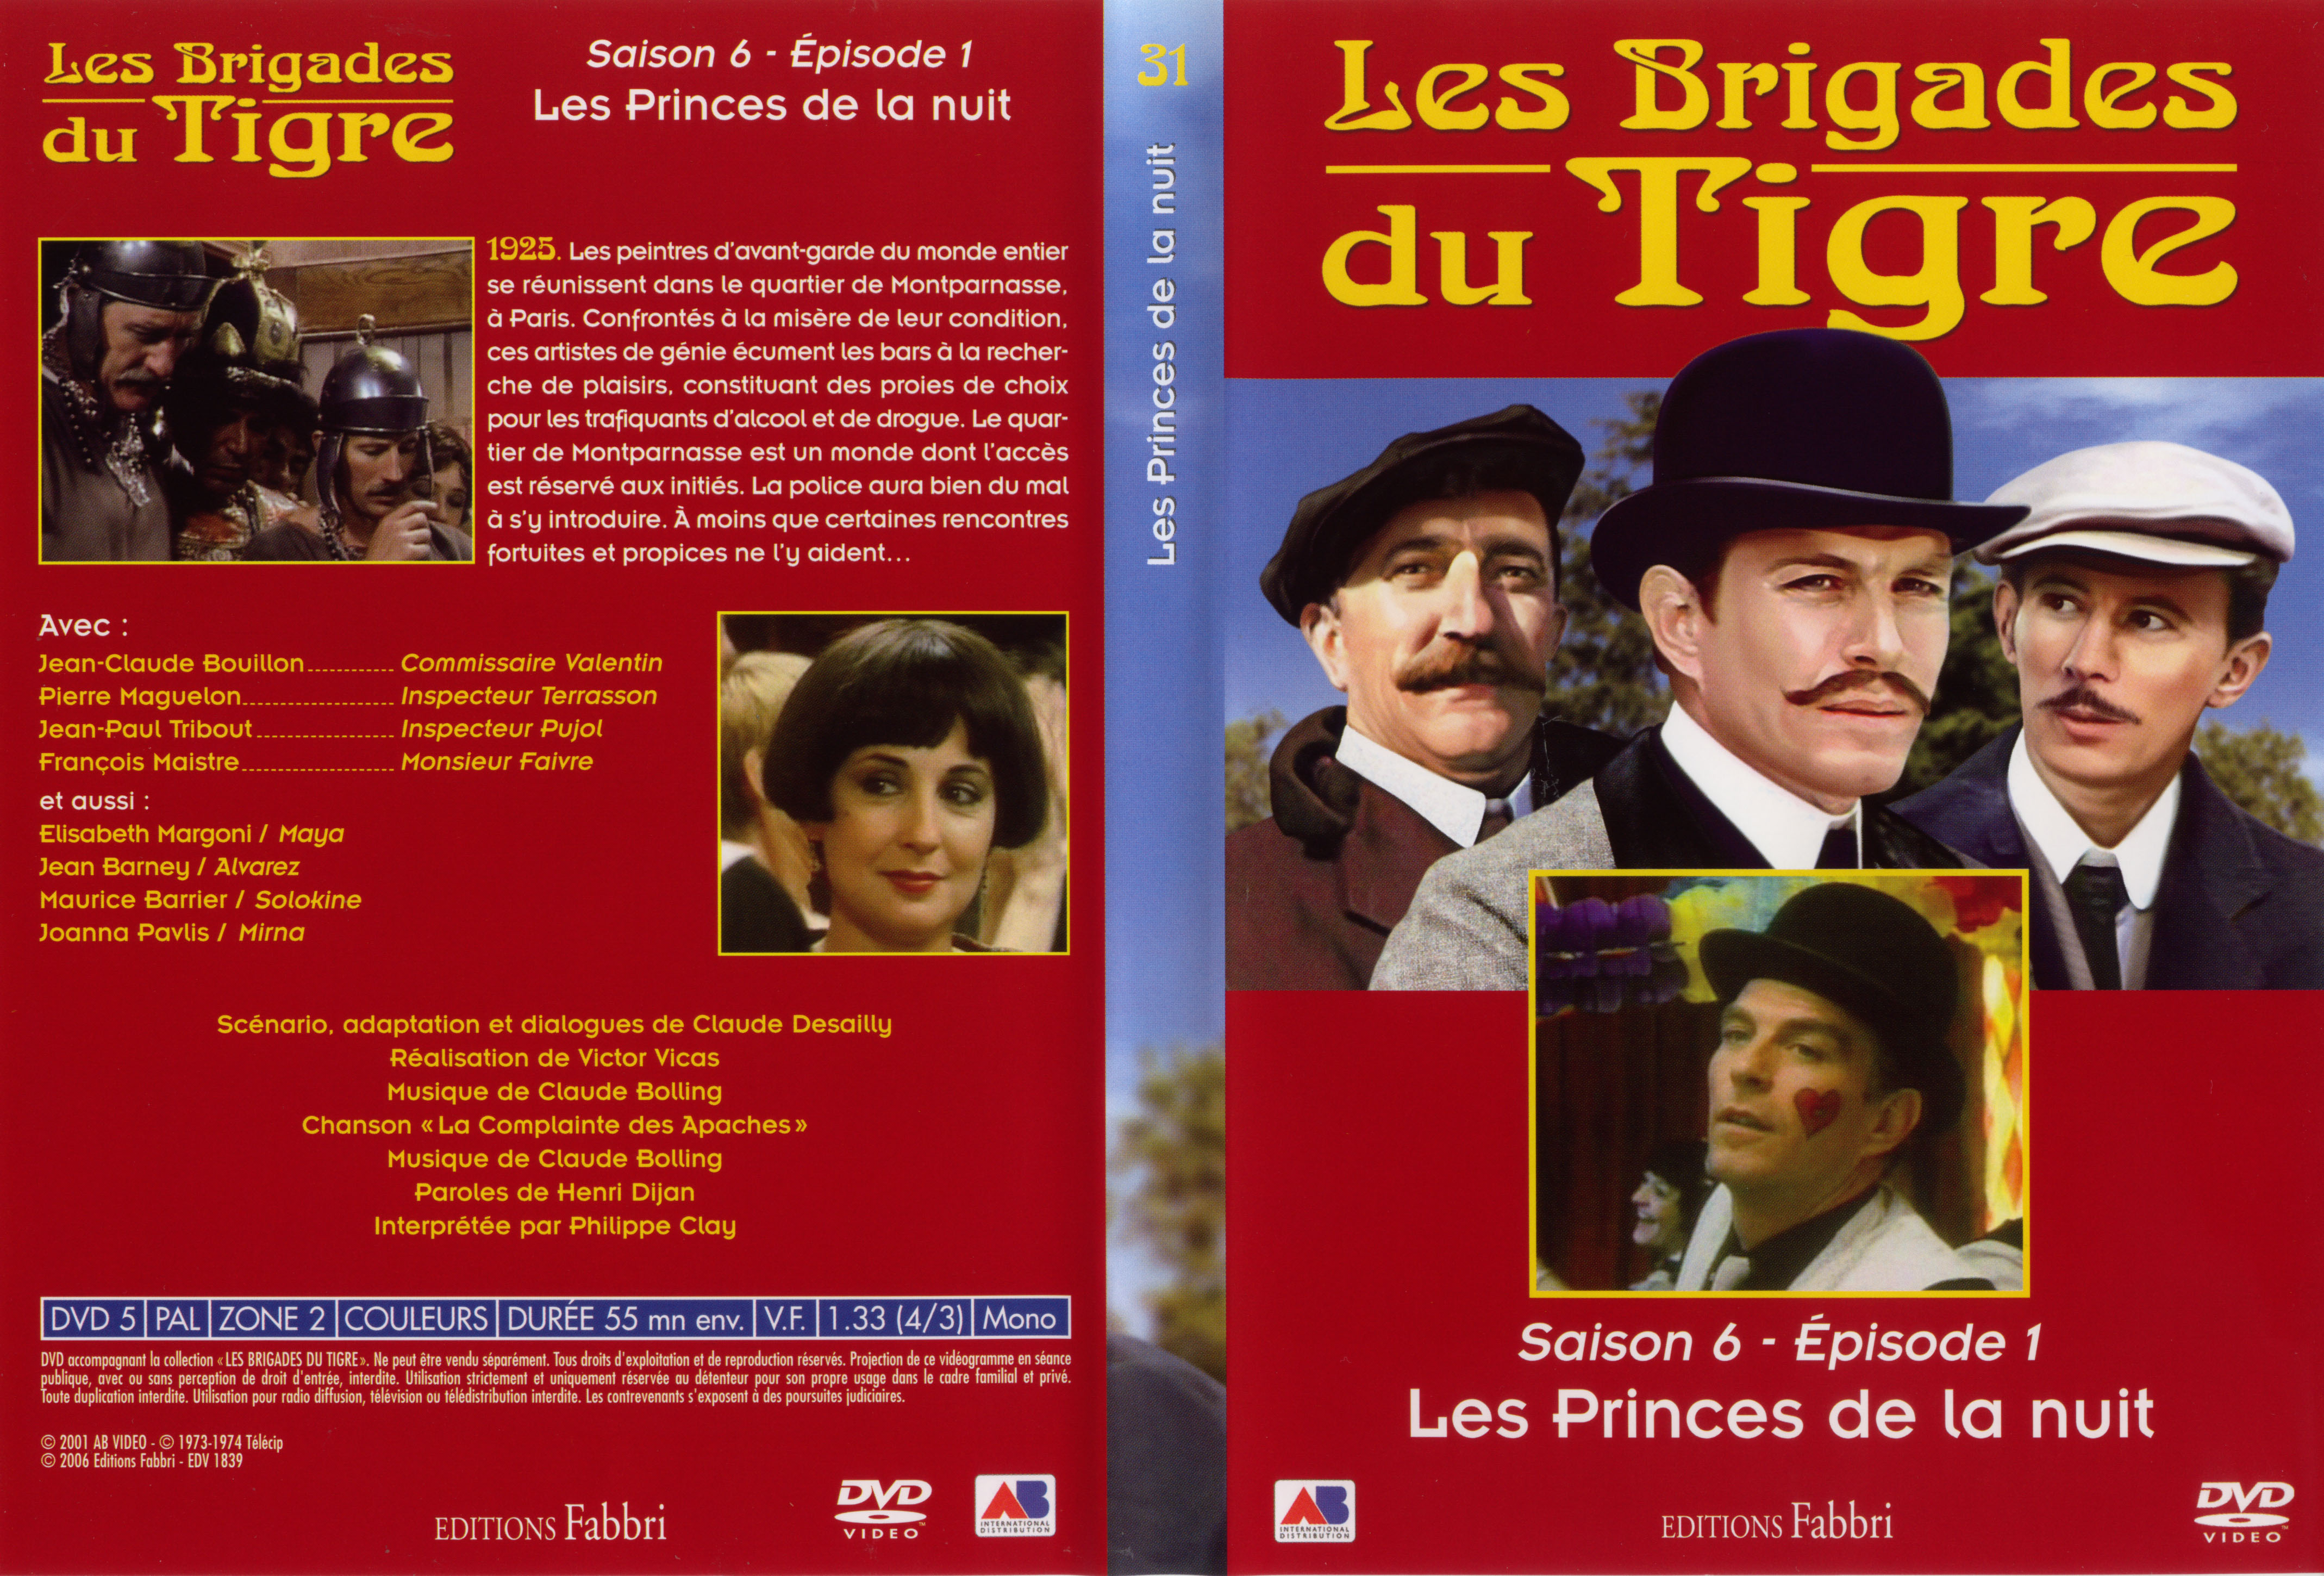 Jaquette DVD Les brigades du tigre saison 6 pisode 1